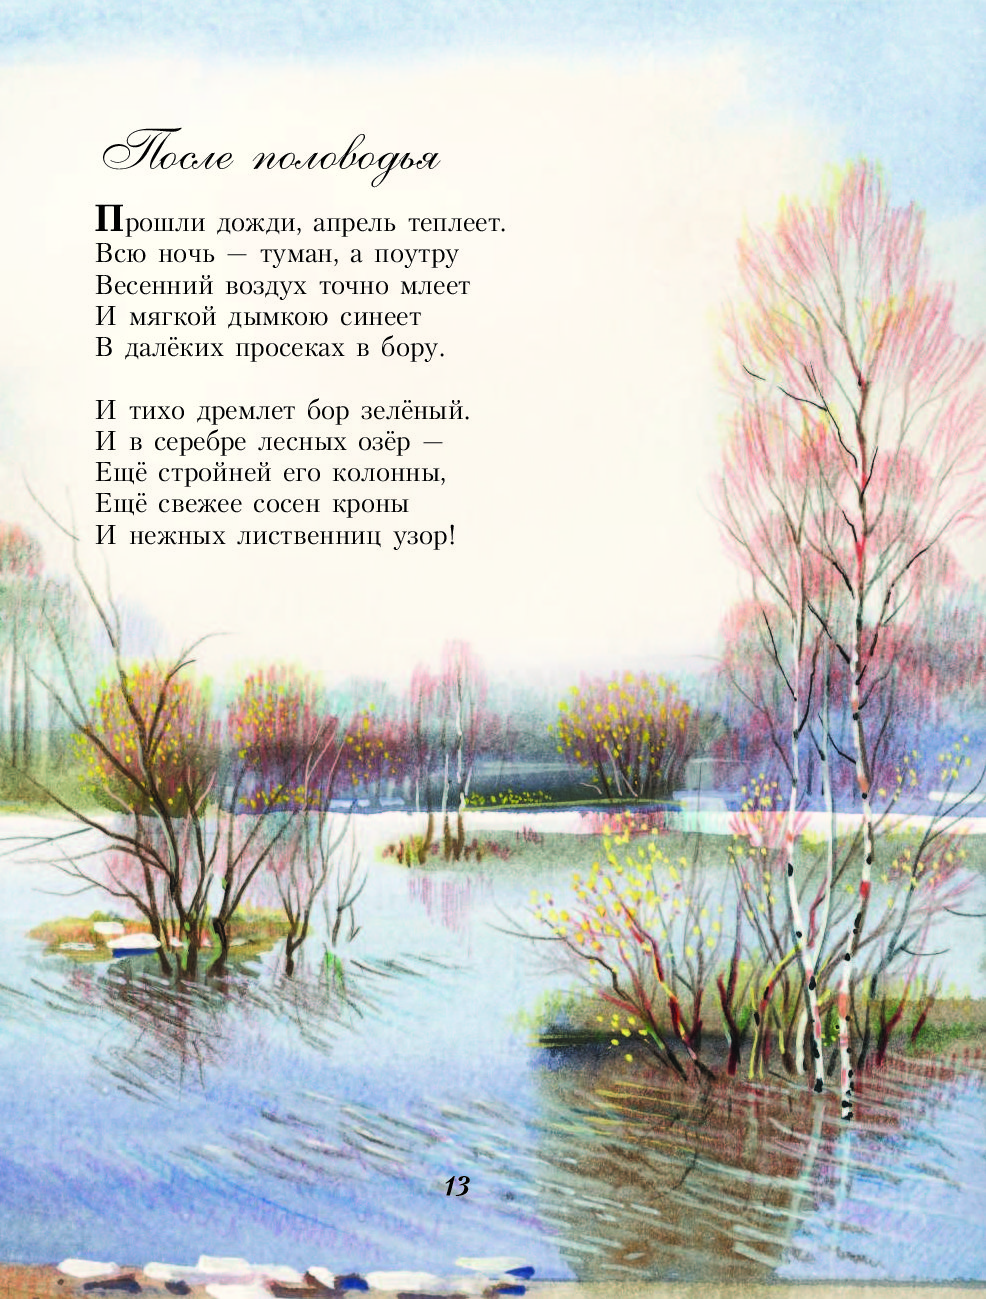 Русские короткие стихотворения